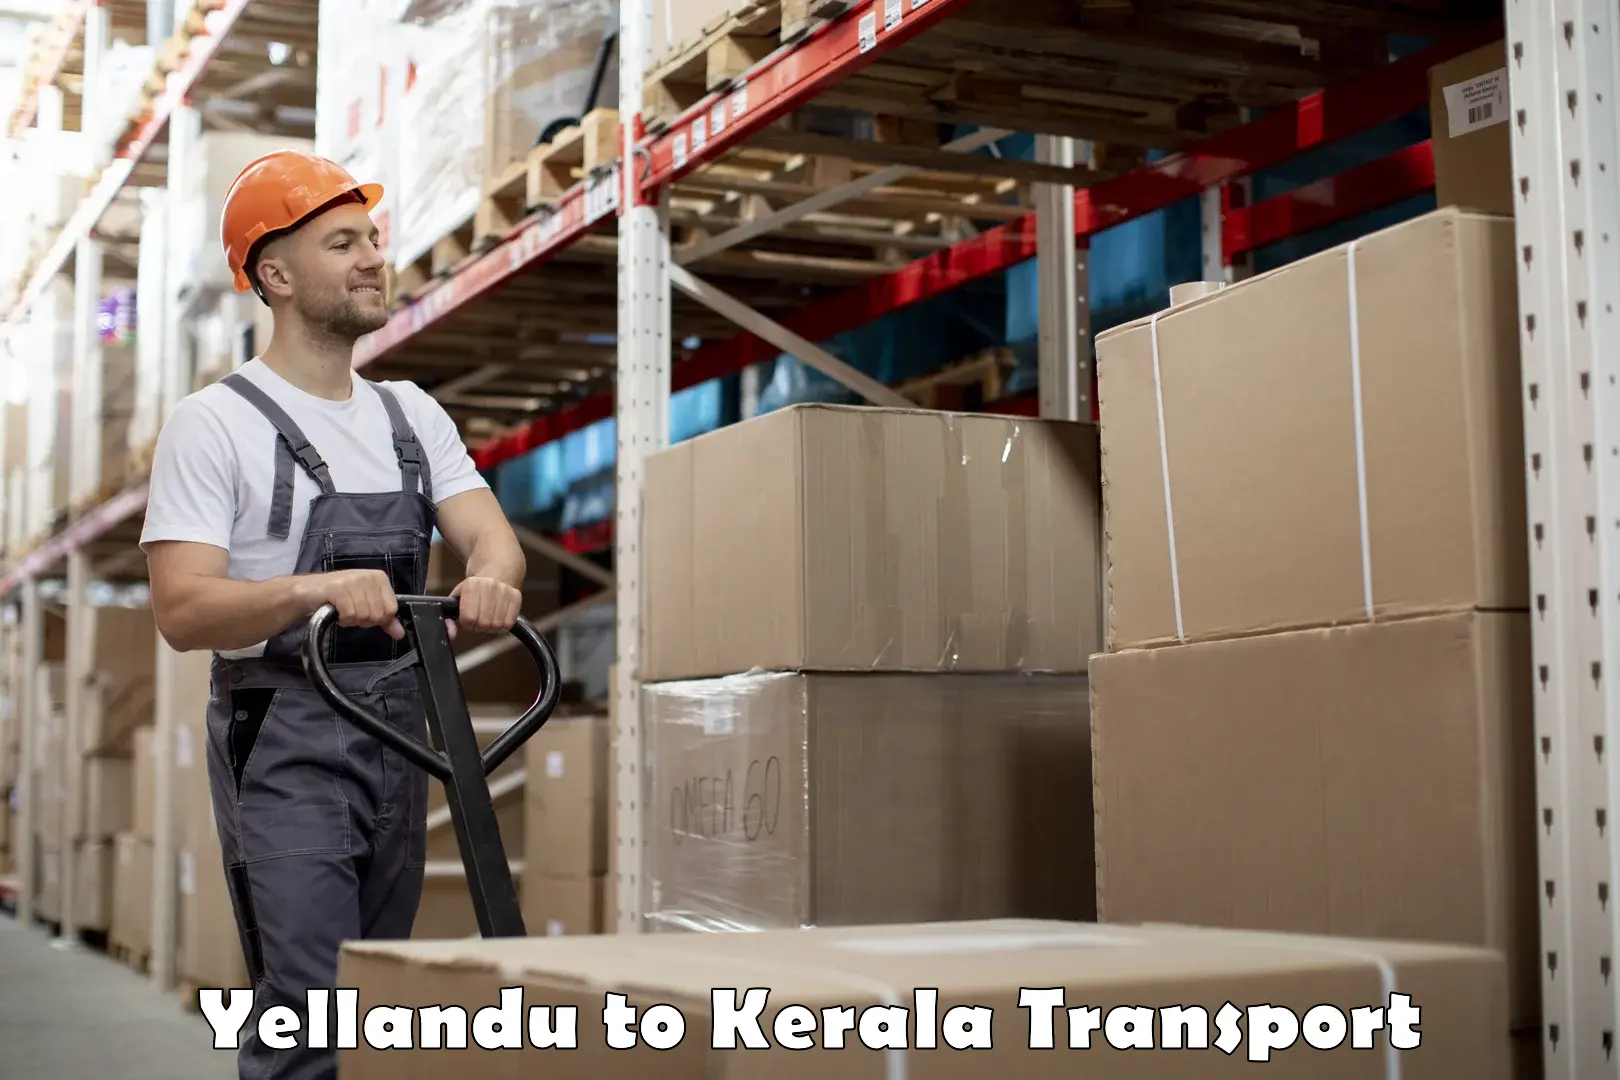 Nearby transport service Yellandu to Sreekandapuram